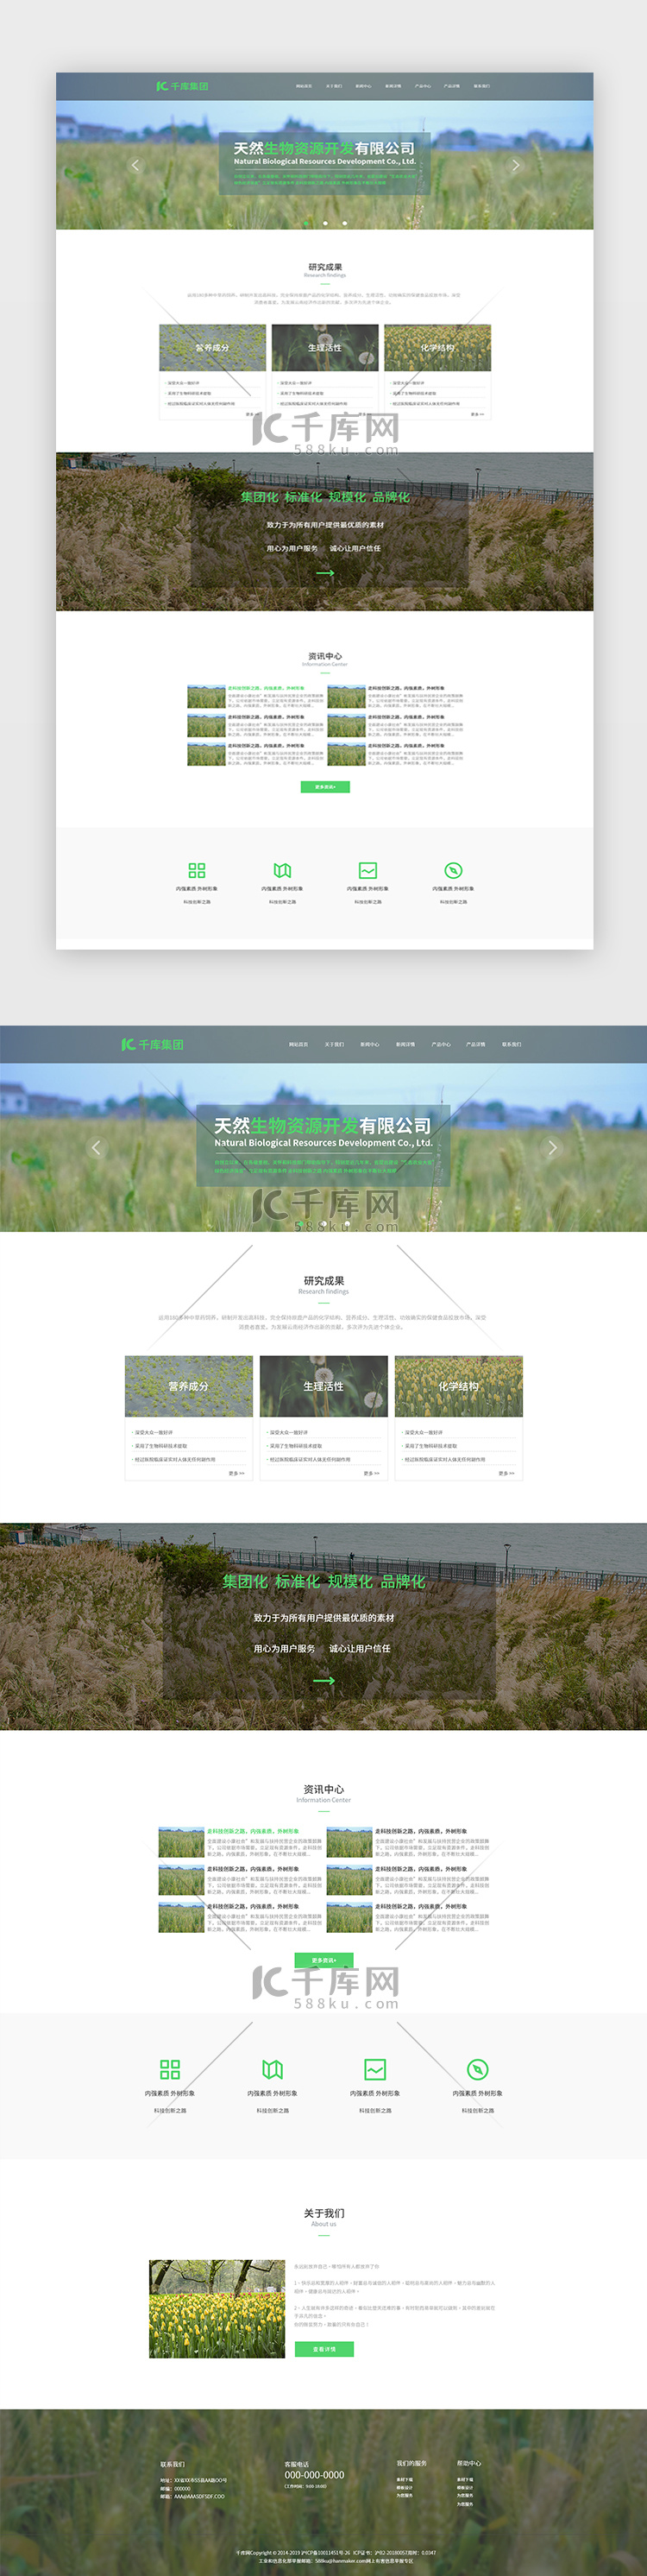 绿色生物资源企业网站首页